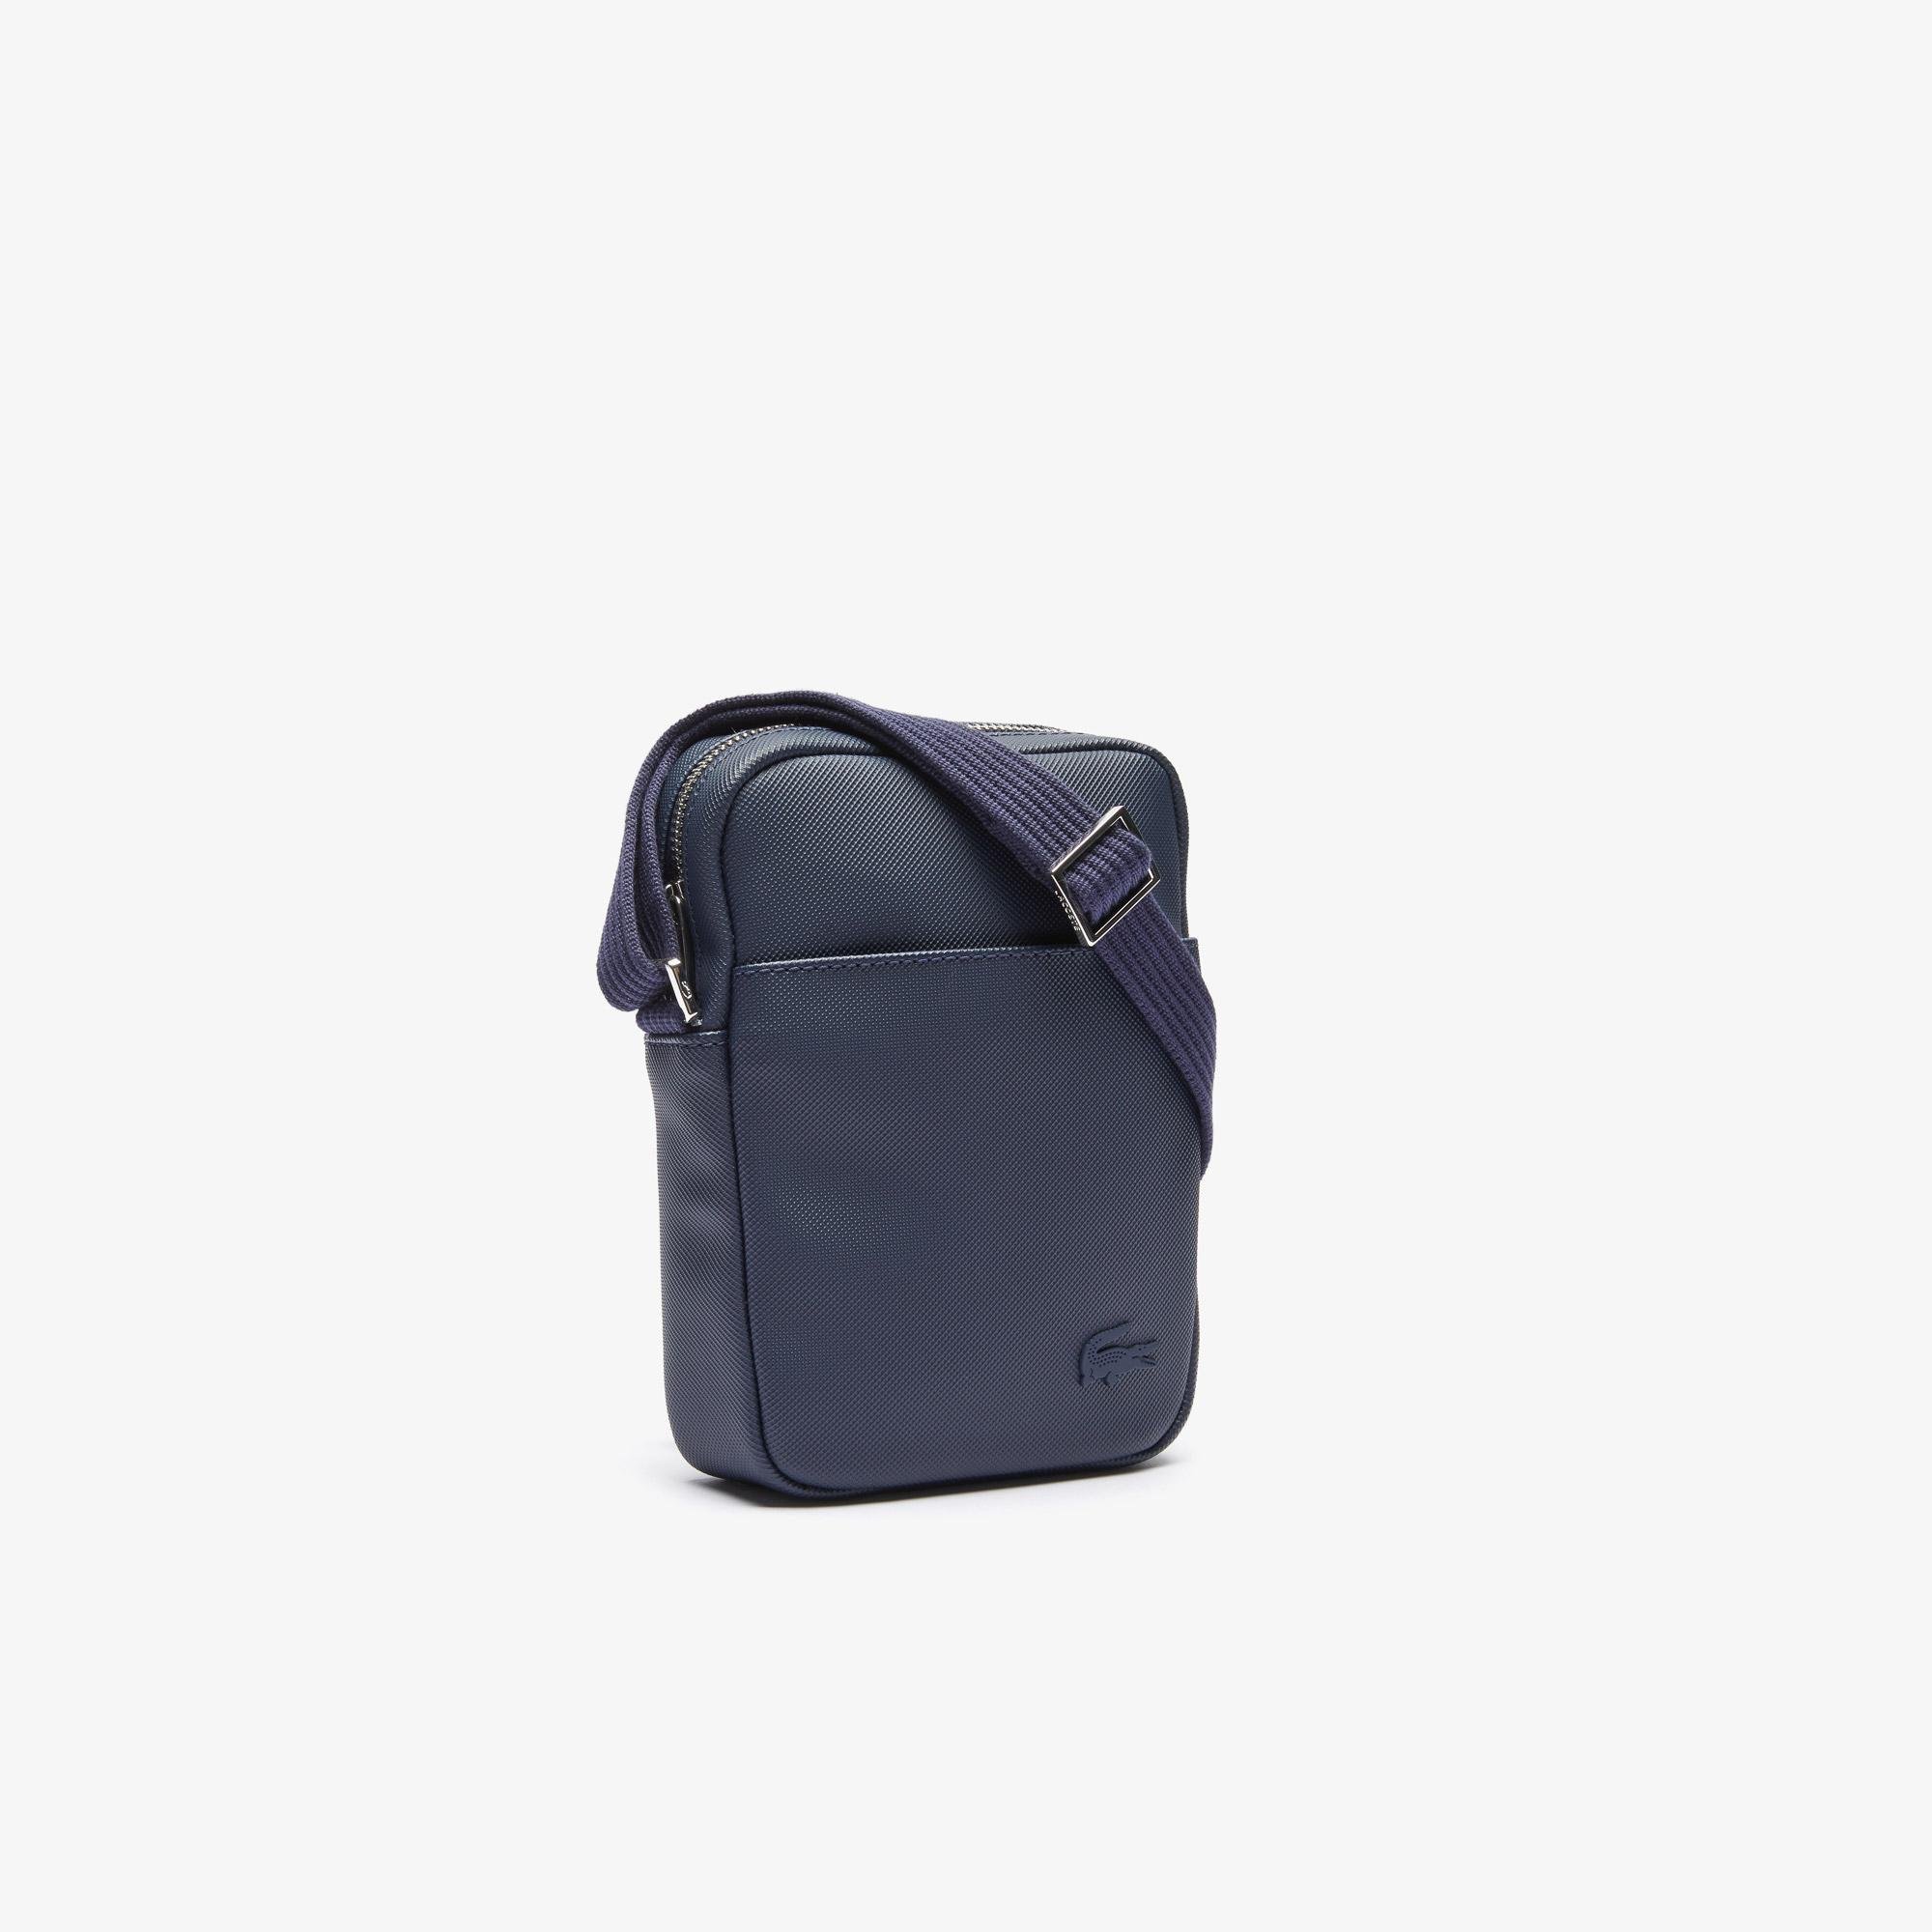 Lacoste férfi klasszikus Petit piké függőleges cipzáras táska